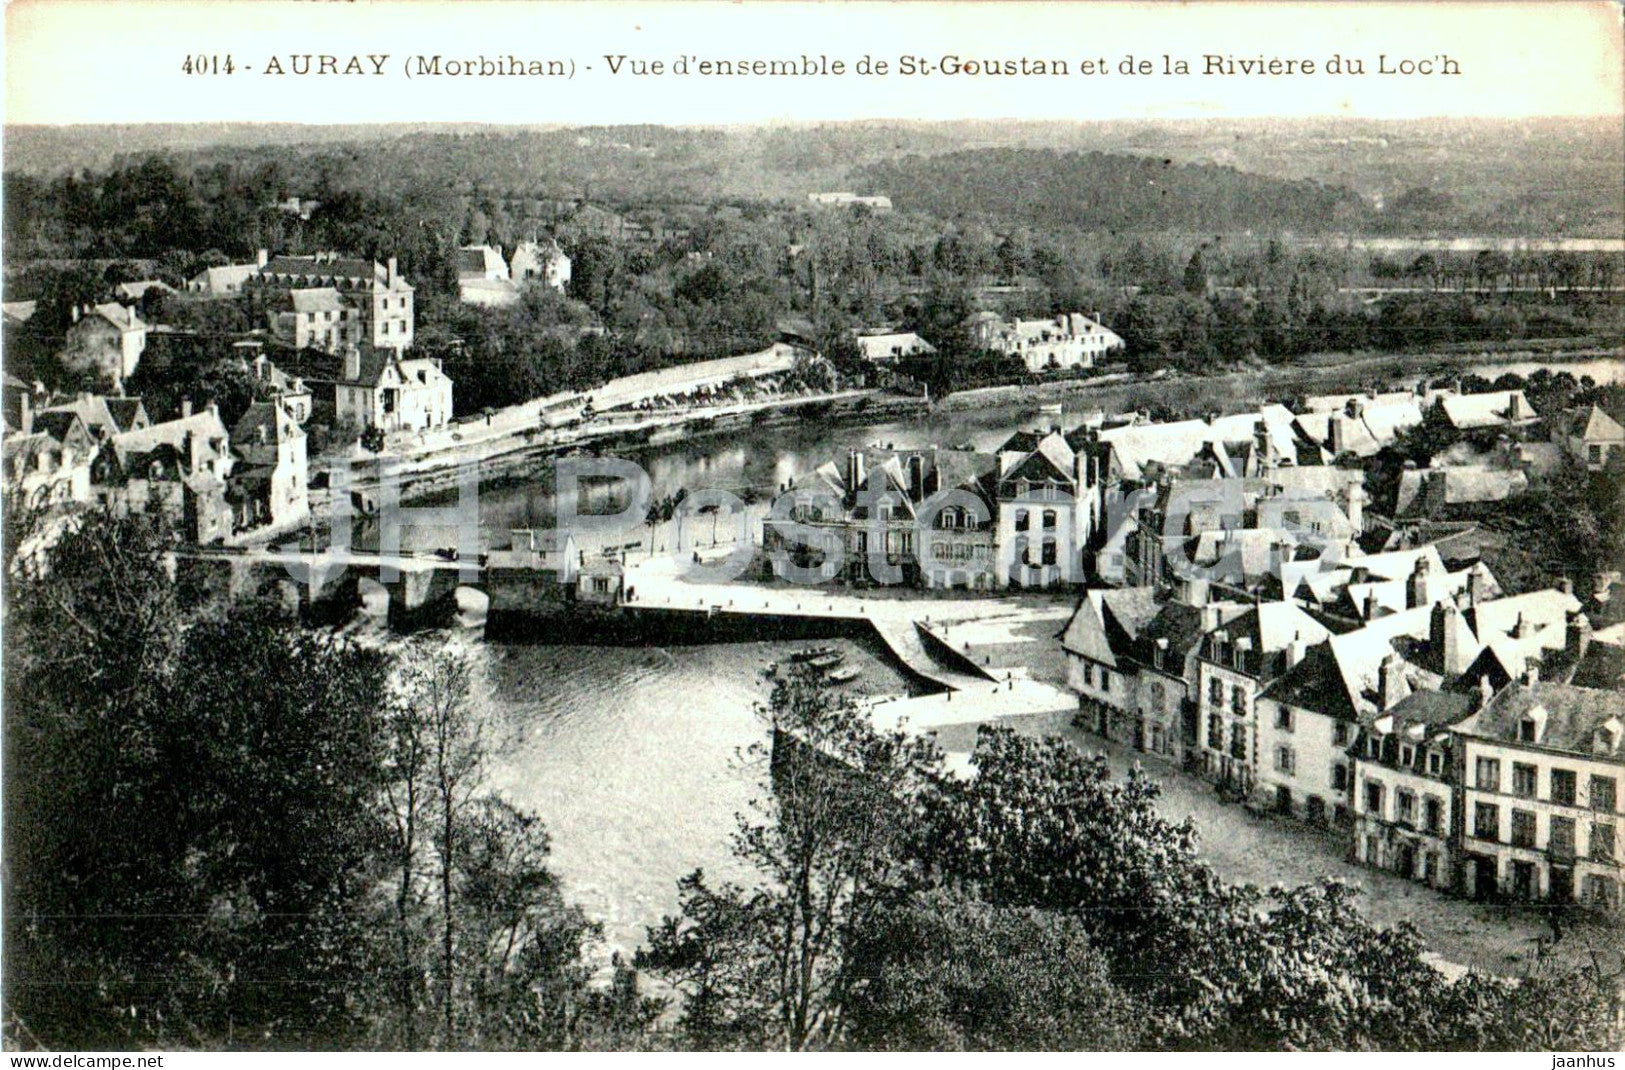 Auray - Vue d'ensemble de St Goustan et de la Riviere du Loc'h - 4014 - old postcard - France - unused - JH Postcards